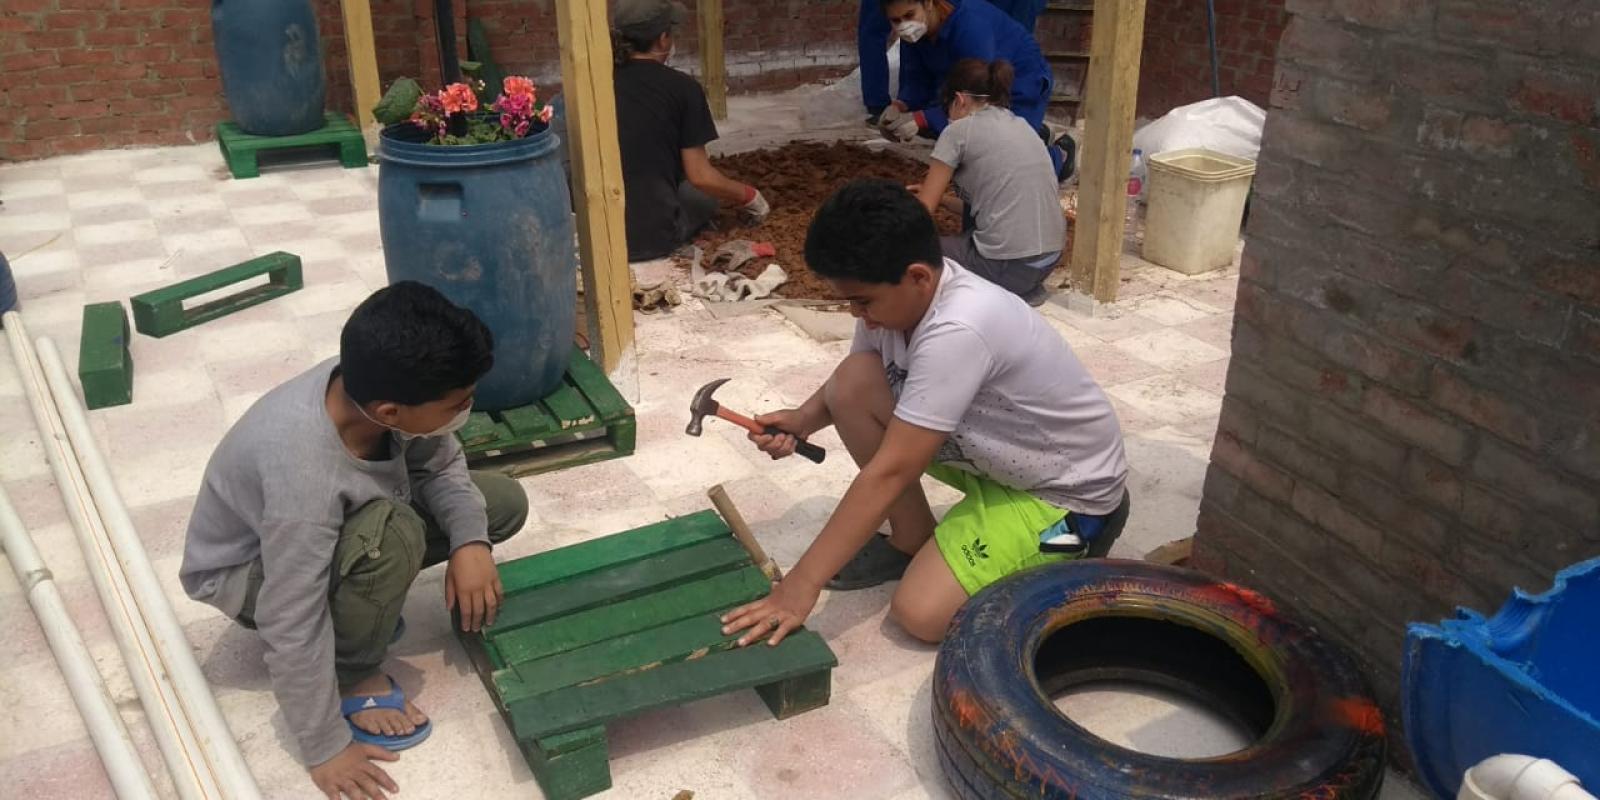 AUC Students Establish Sustainable Rooftop Community Garden in Informal Cairo Neighborhood